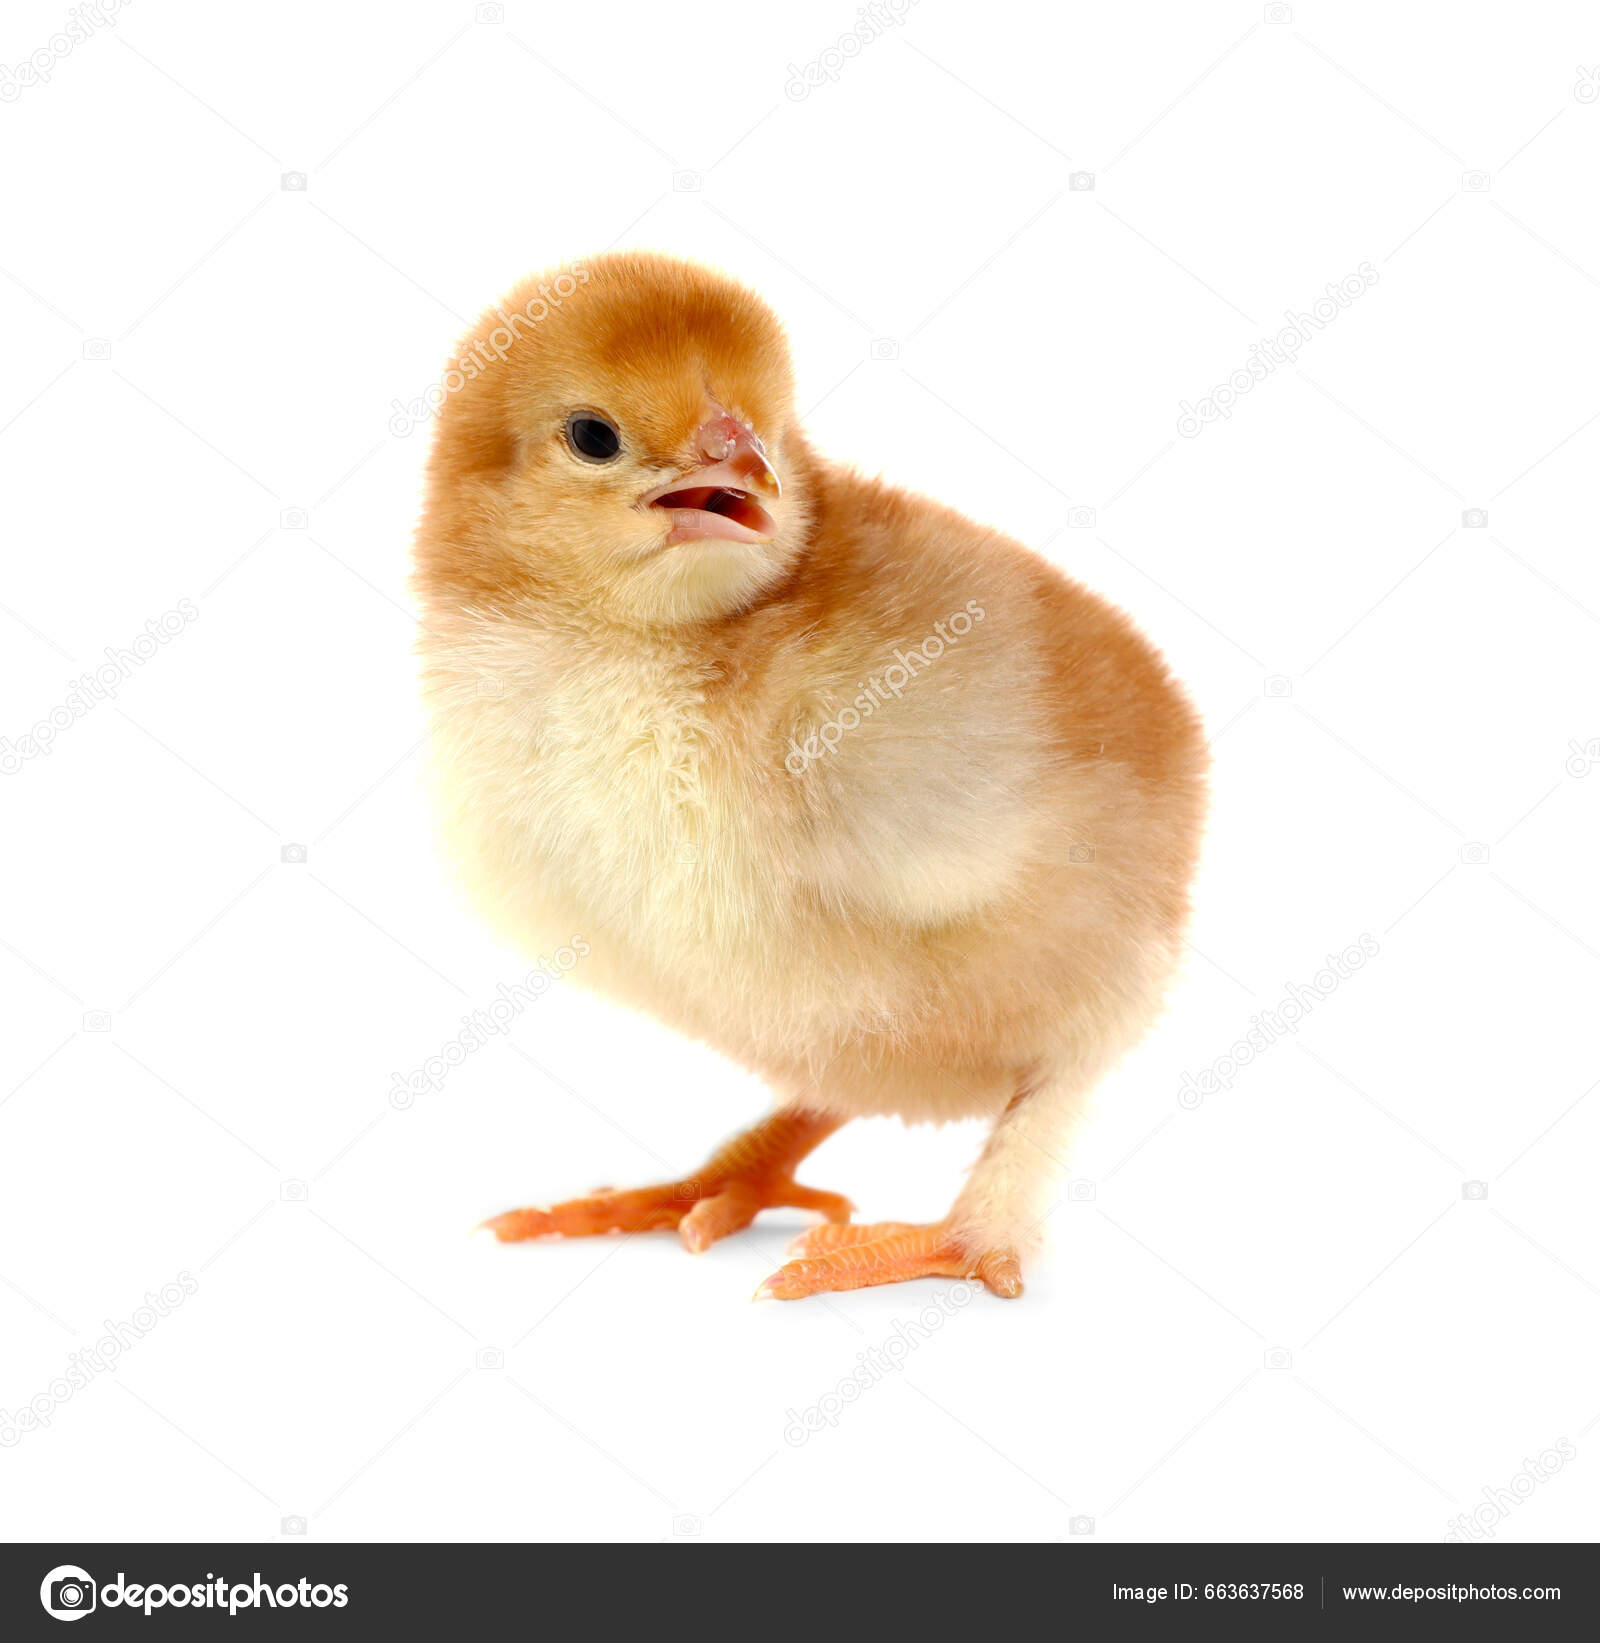 fluffy baby chicken